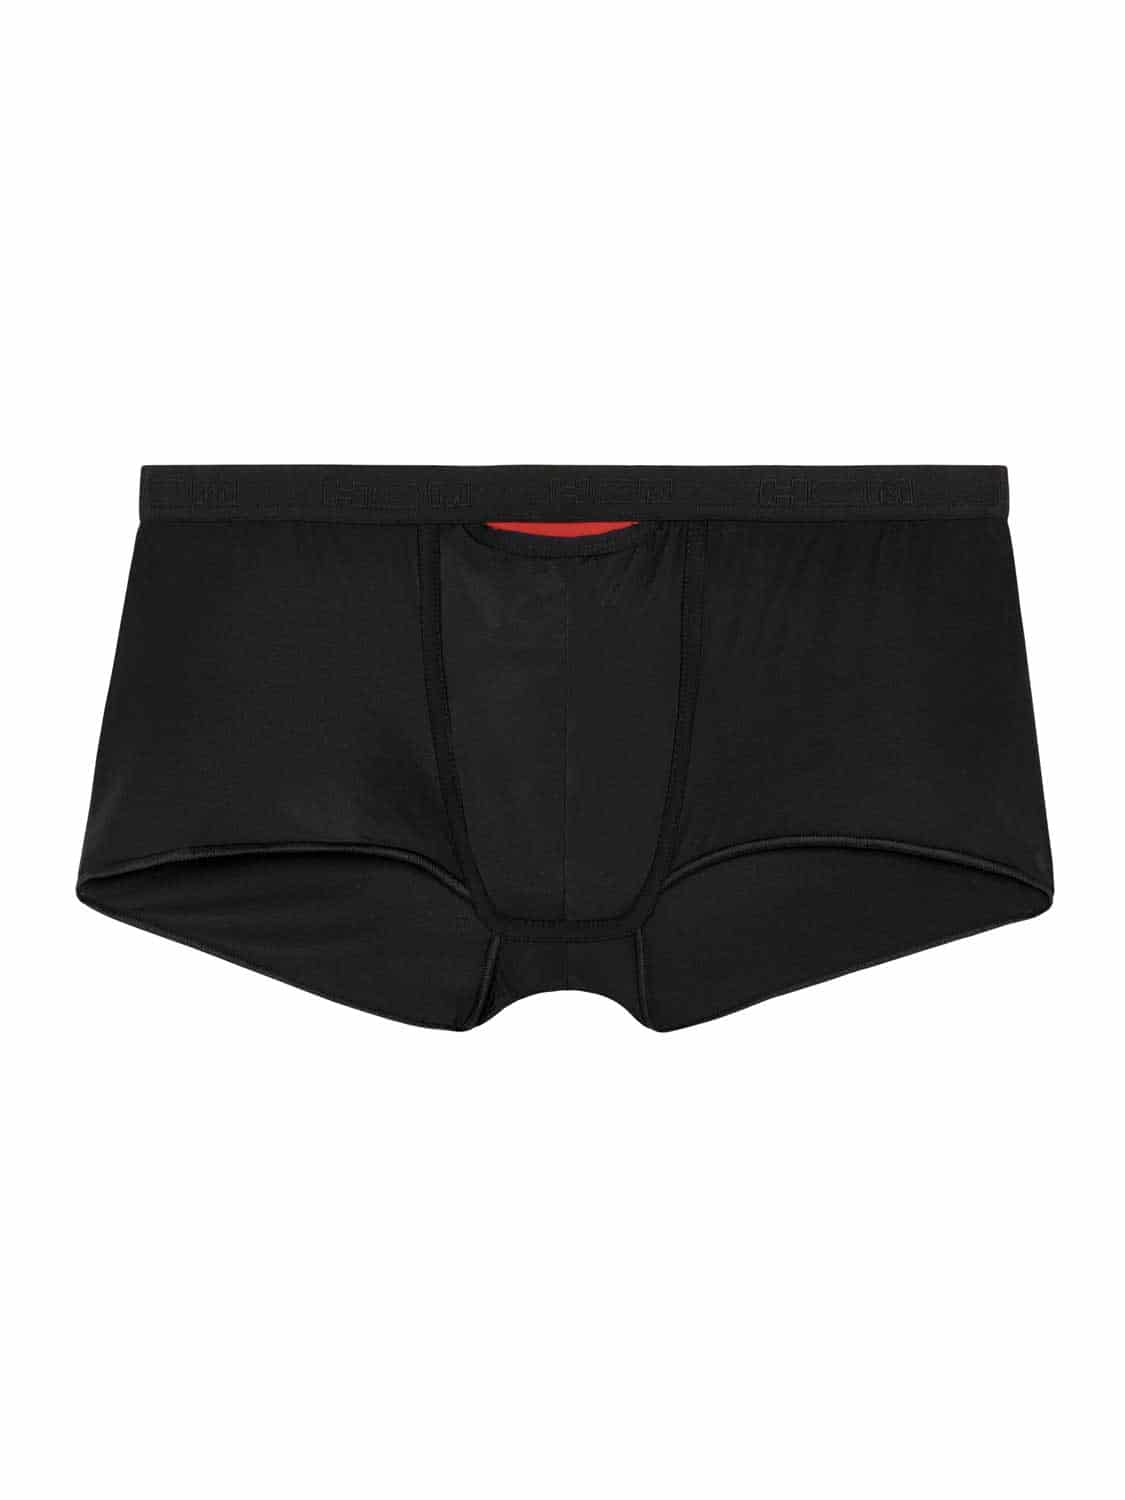 Hom PLUMES MICRO BRIEF Black - Fast delivery  Spartoo Europe ! - Underwear  Underpants / Brief Men 39,00 €